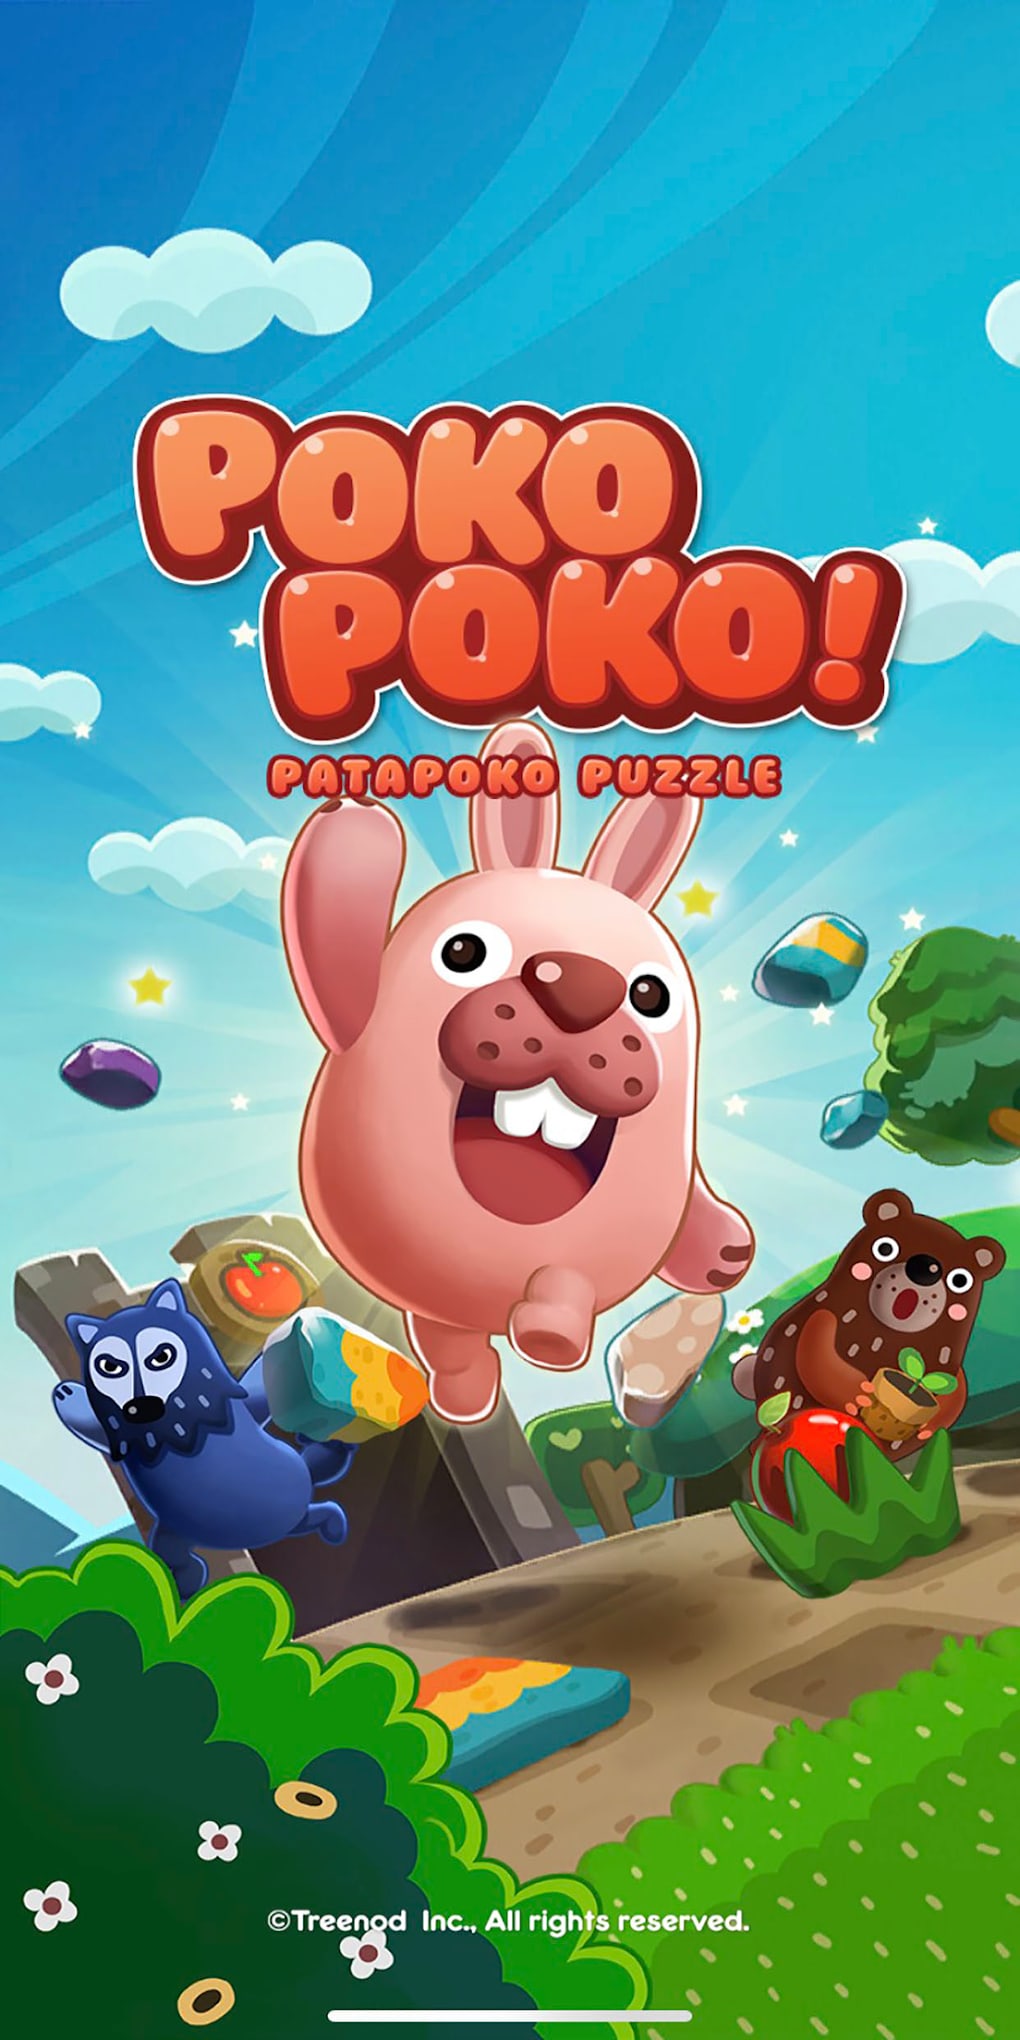 Poki Jogos Online - Arcade, Corrida, RPG E Ação APK for Android